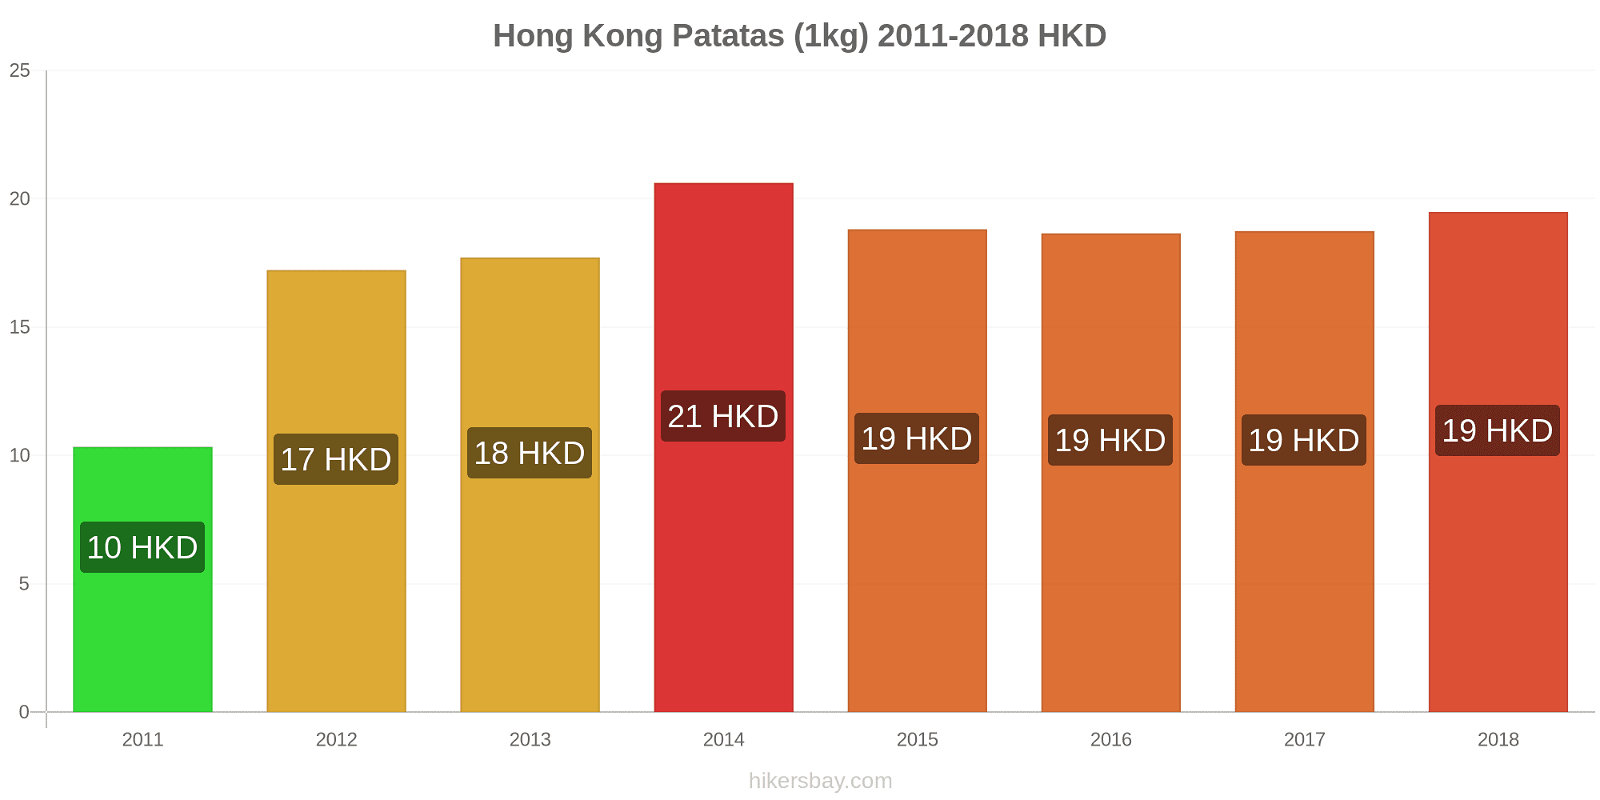 Hong Kong cambios de precios Patatas (1kg) hikersbay.com